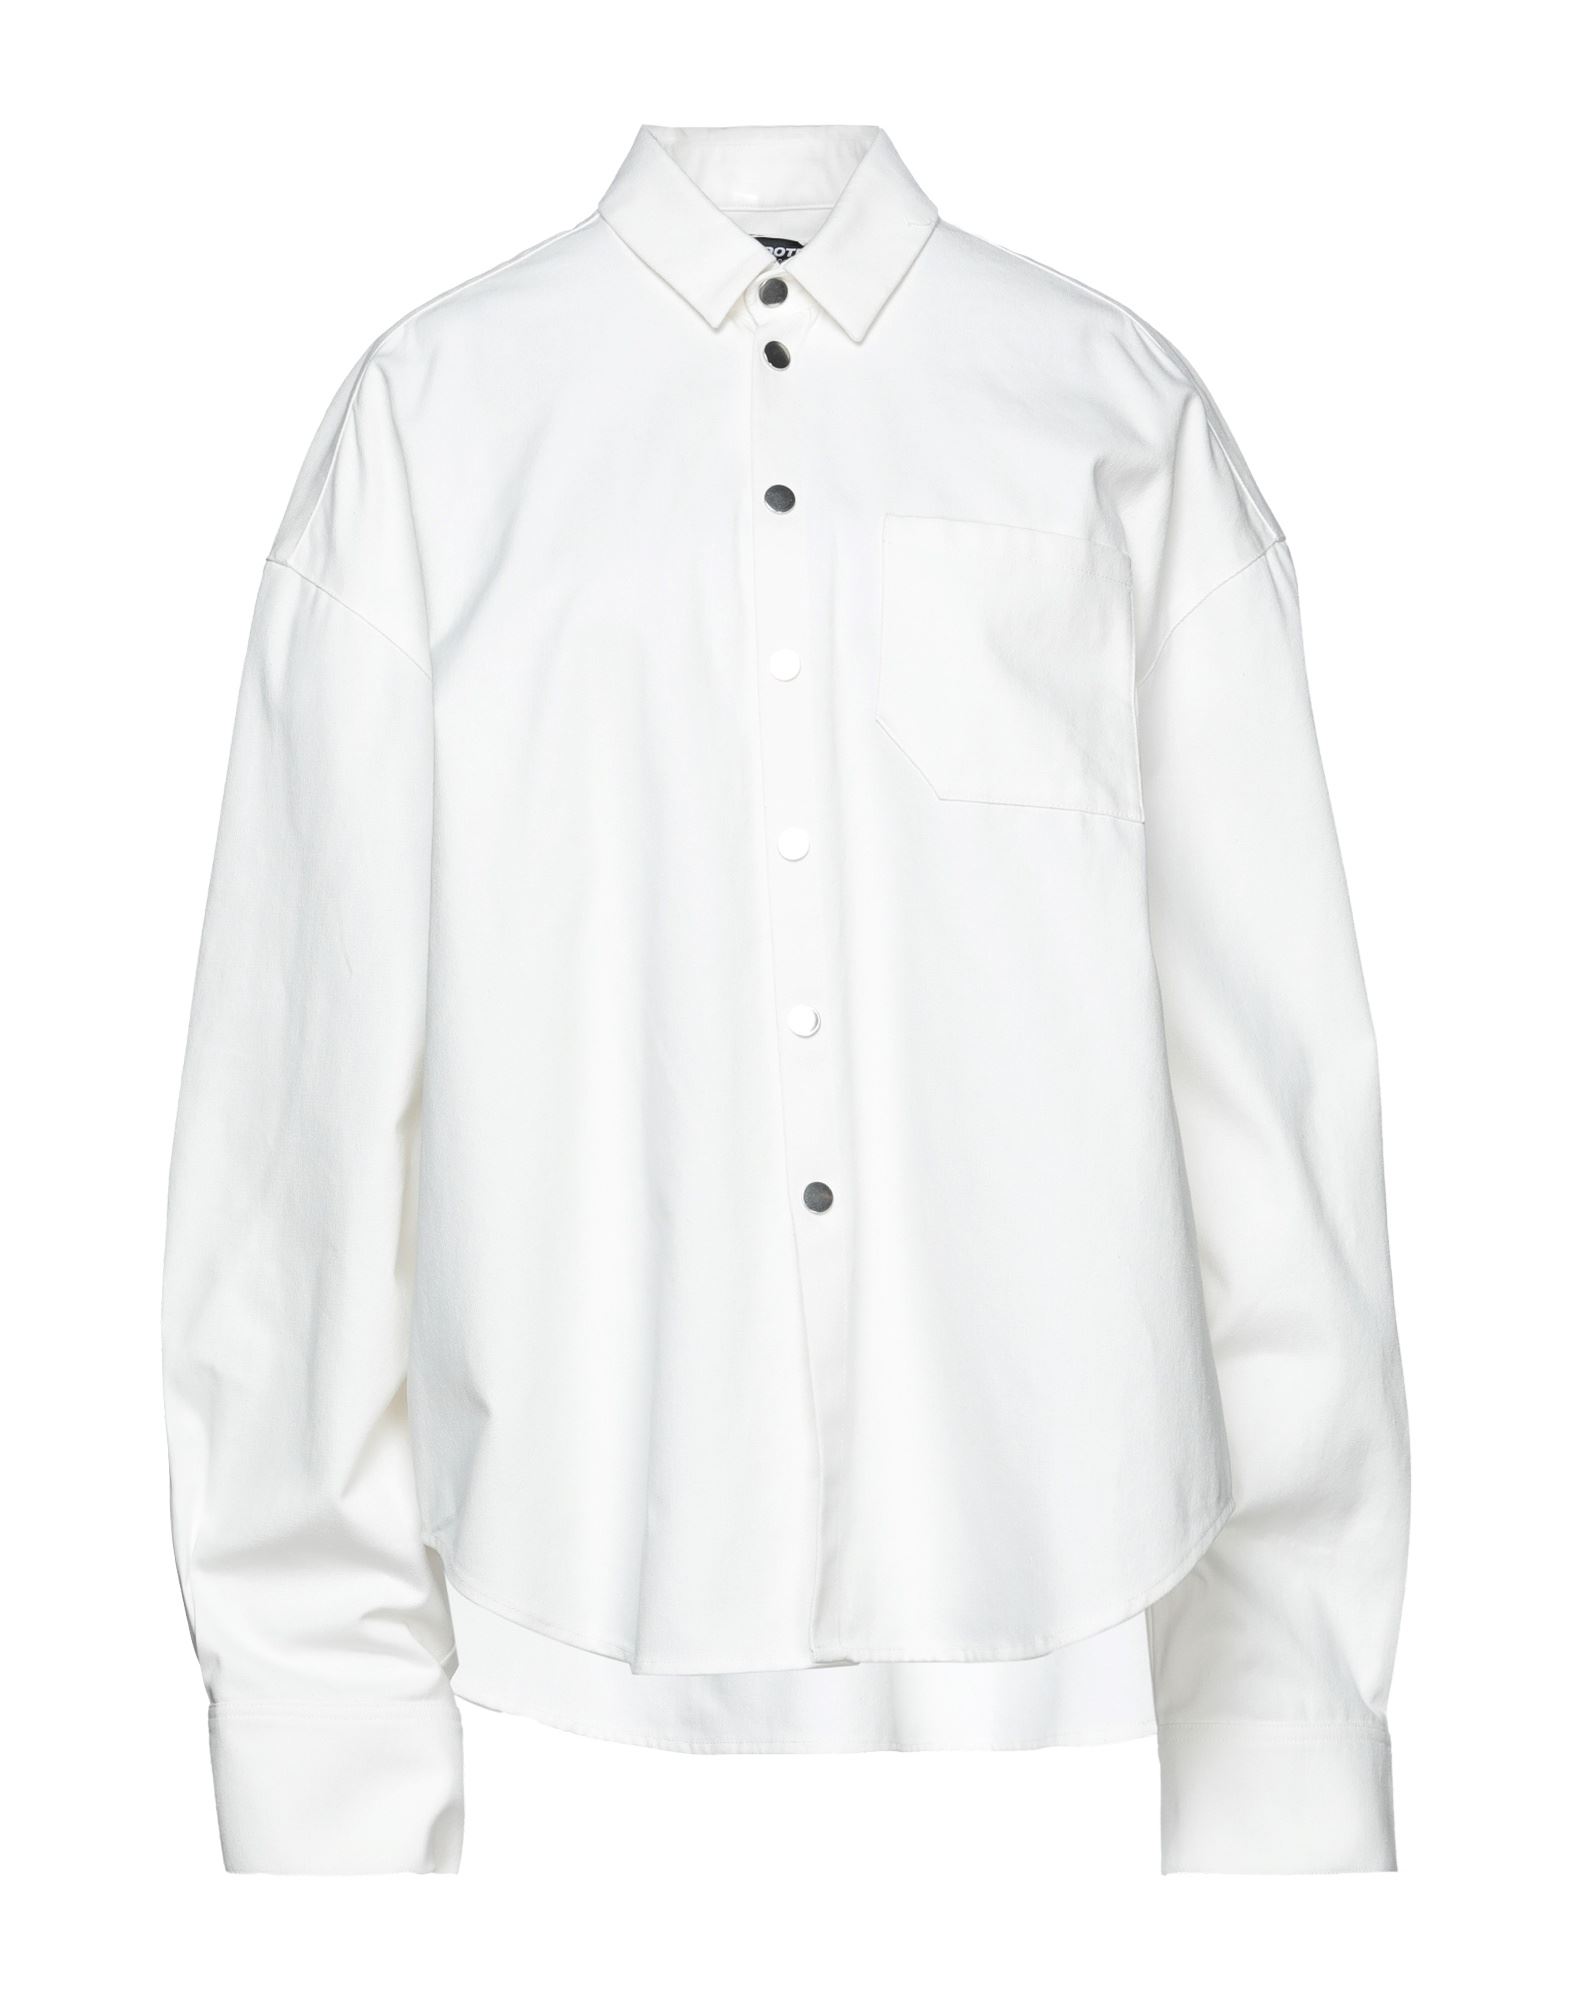 Antidote Studio Shirts In White